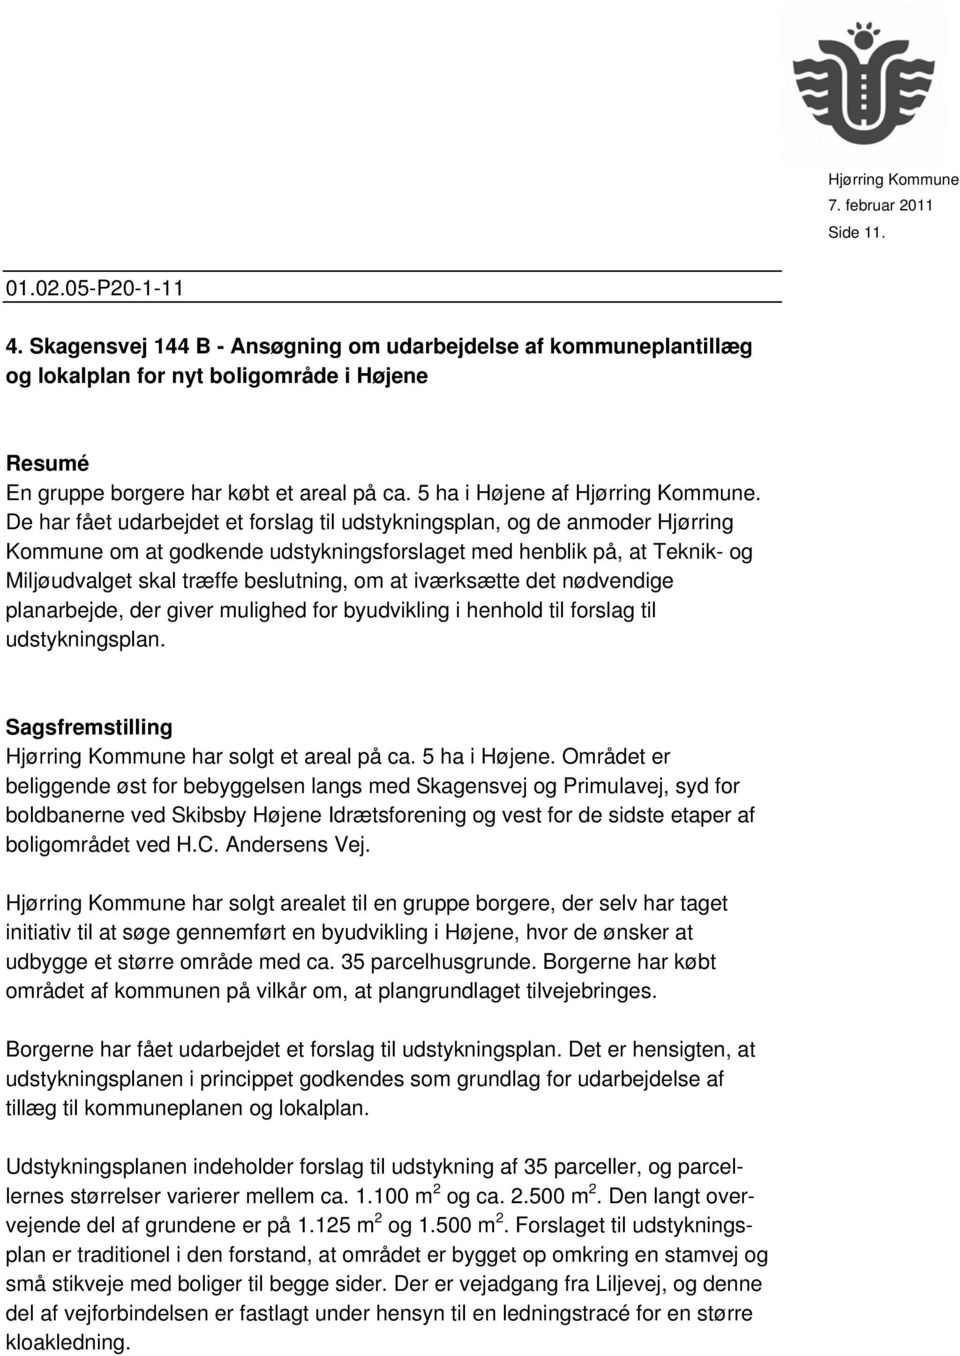 De har fået udarbejdet et forslag til udstykningsplan, og de anmoder Hjørring Kommune om at godkende udstykningsforslaget med henblik på, at Teknik- og Miljøudvalget skal træffe beslutning, om at